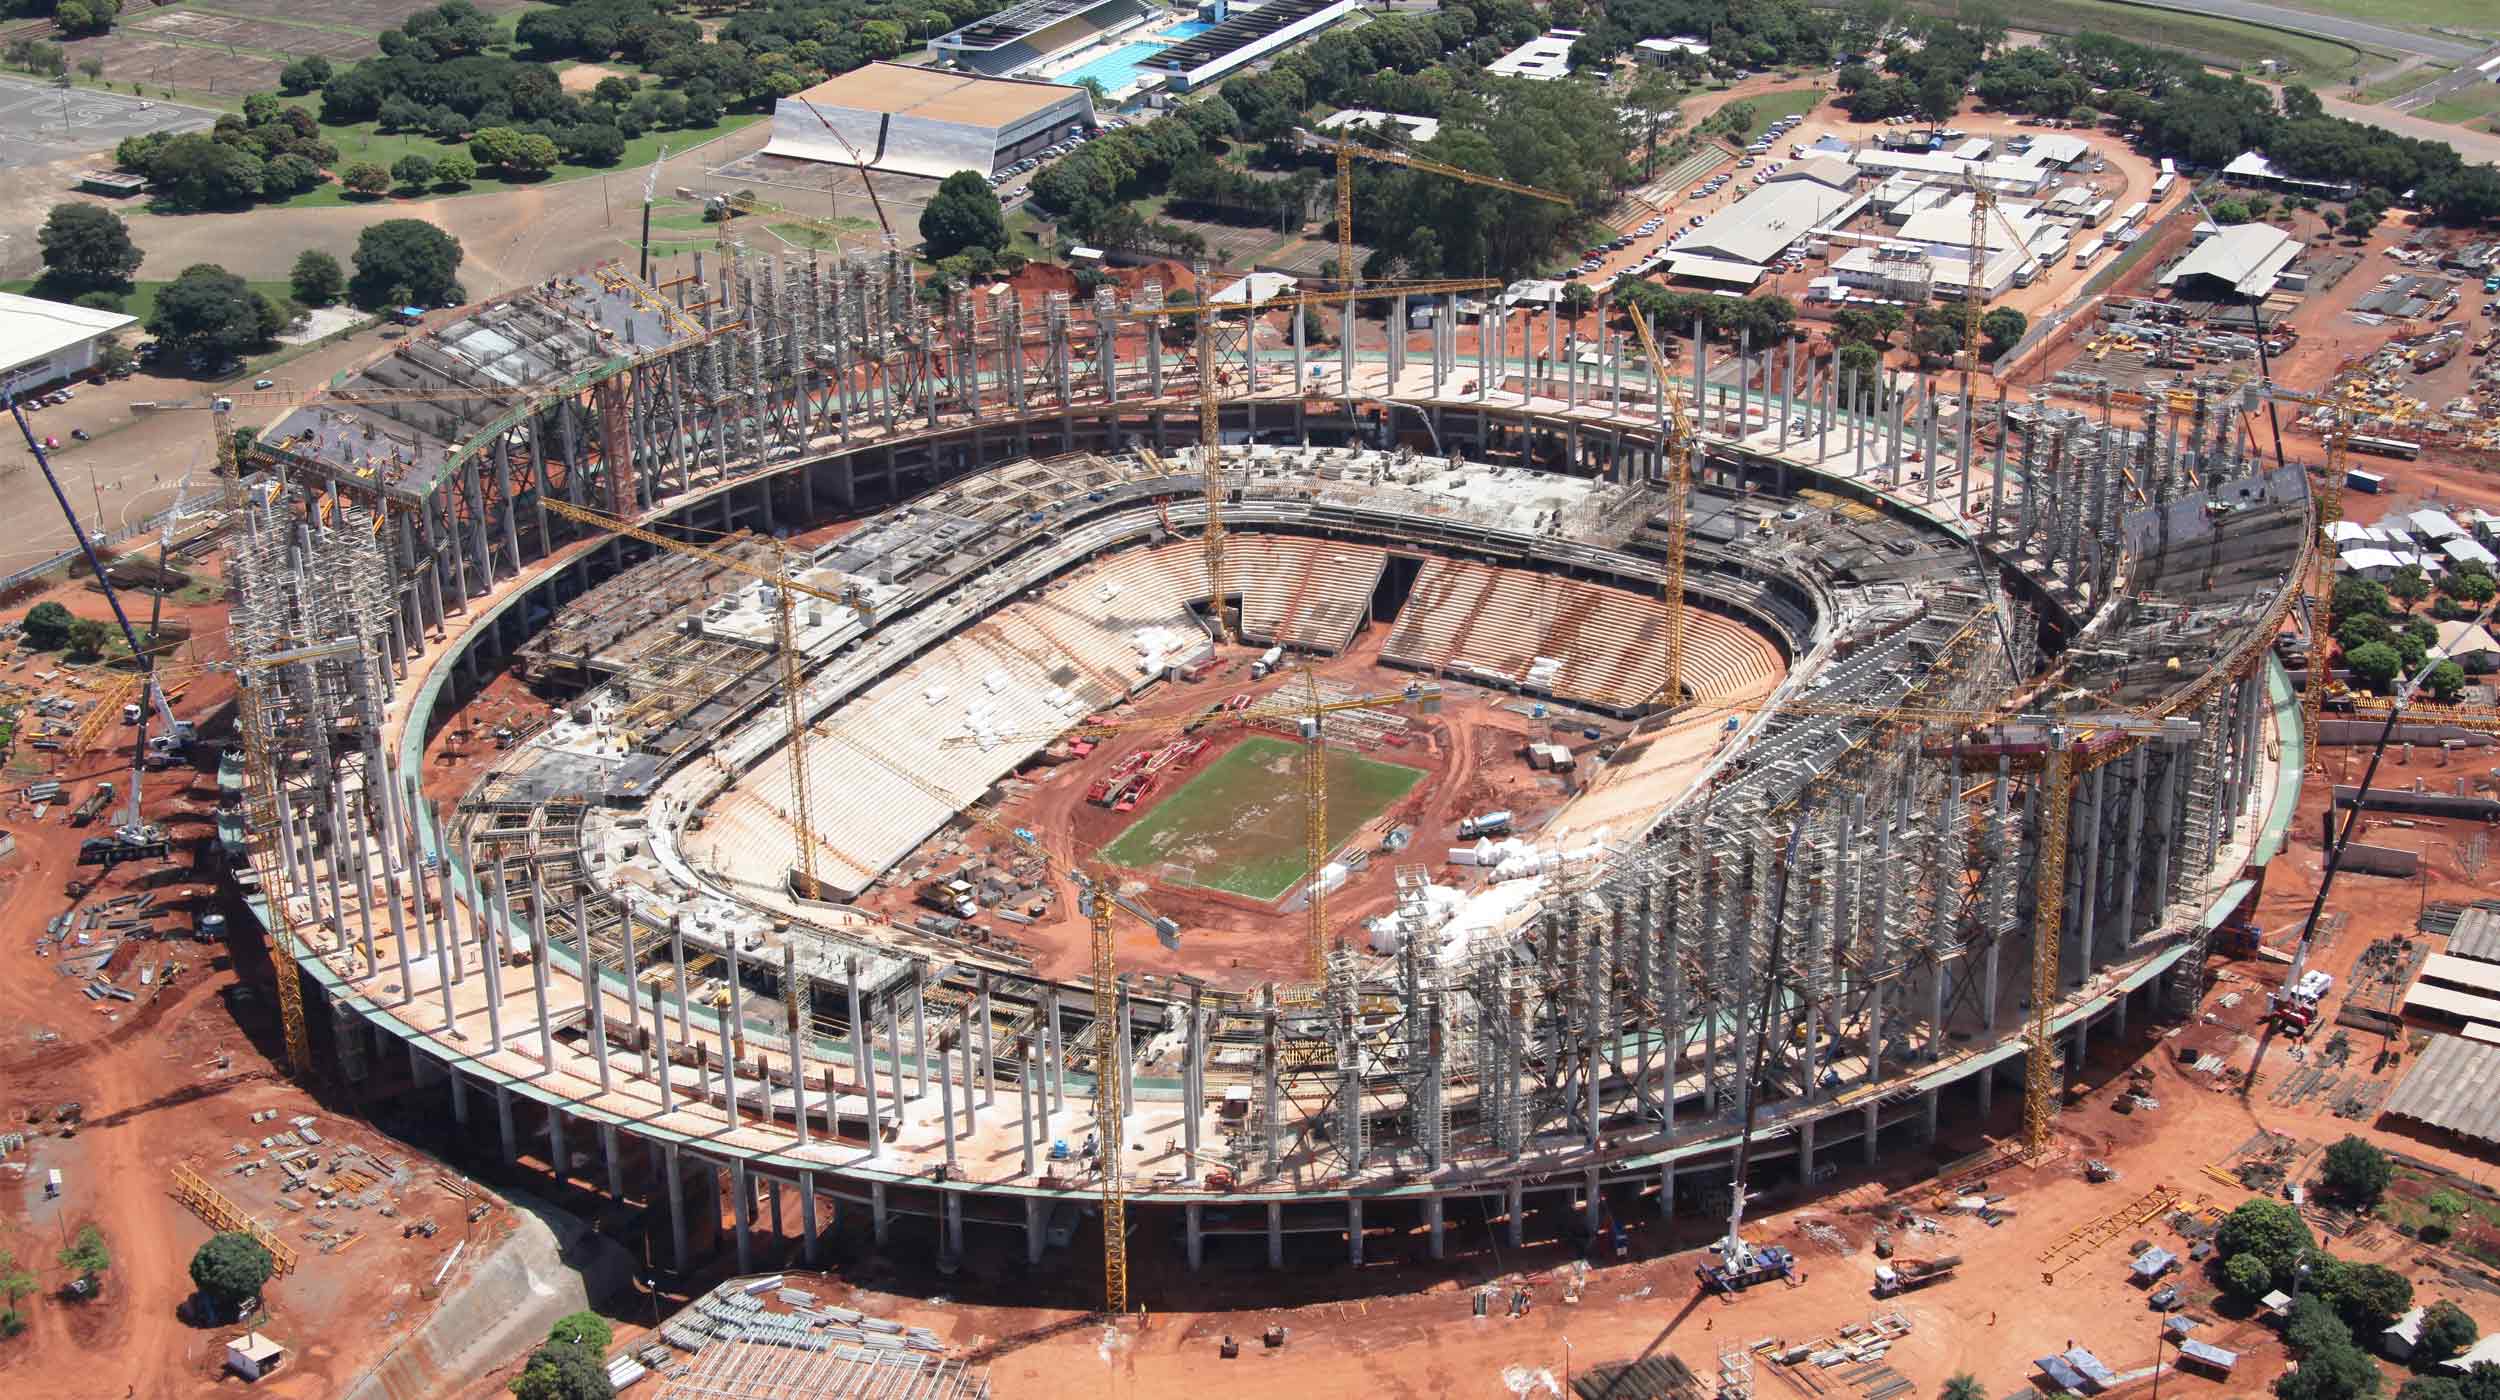 Meglio conosciuto con il nome di Mane Garrincha, è uno degli stadi che ha ospitato i Mondiali di Calcio del 2014.